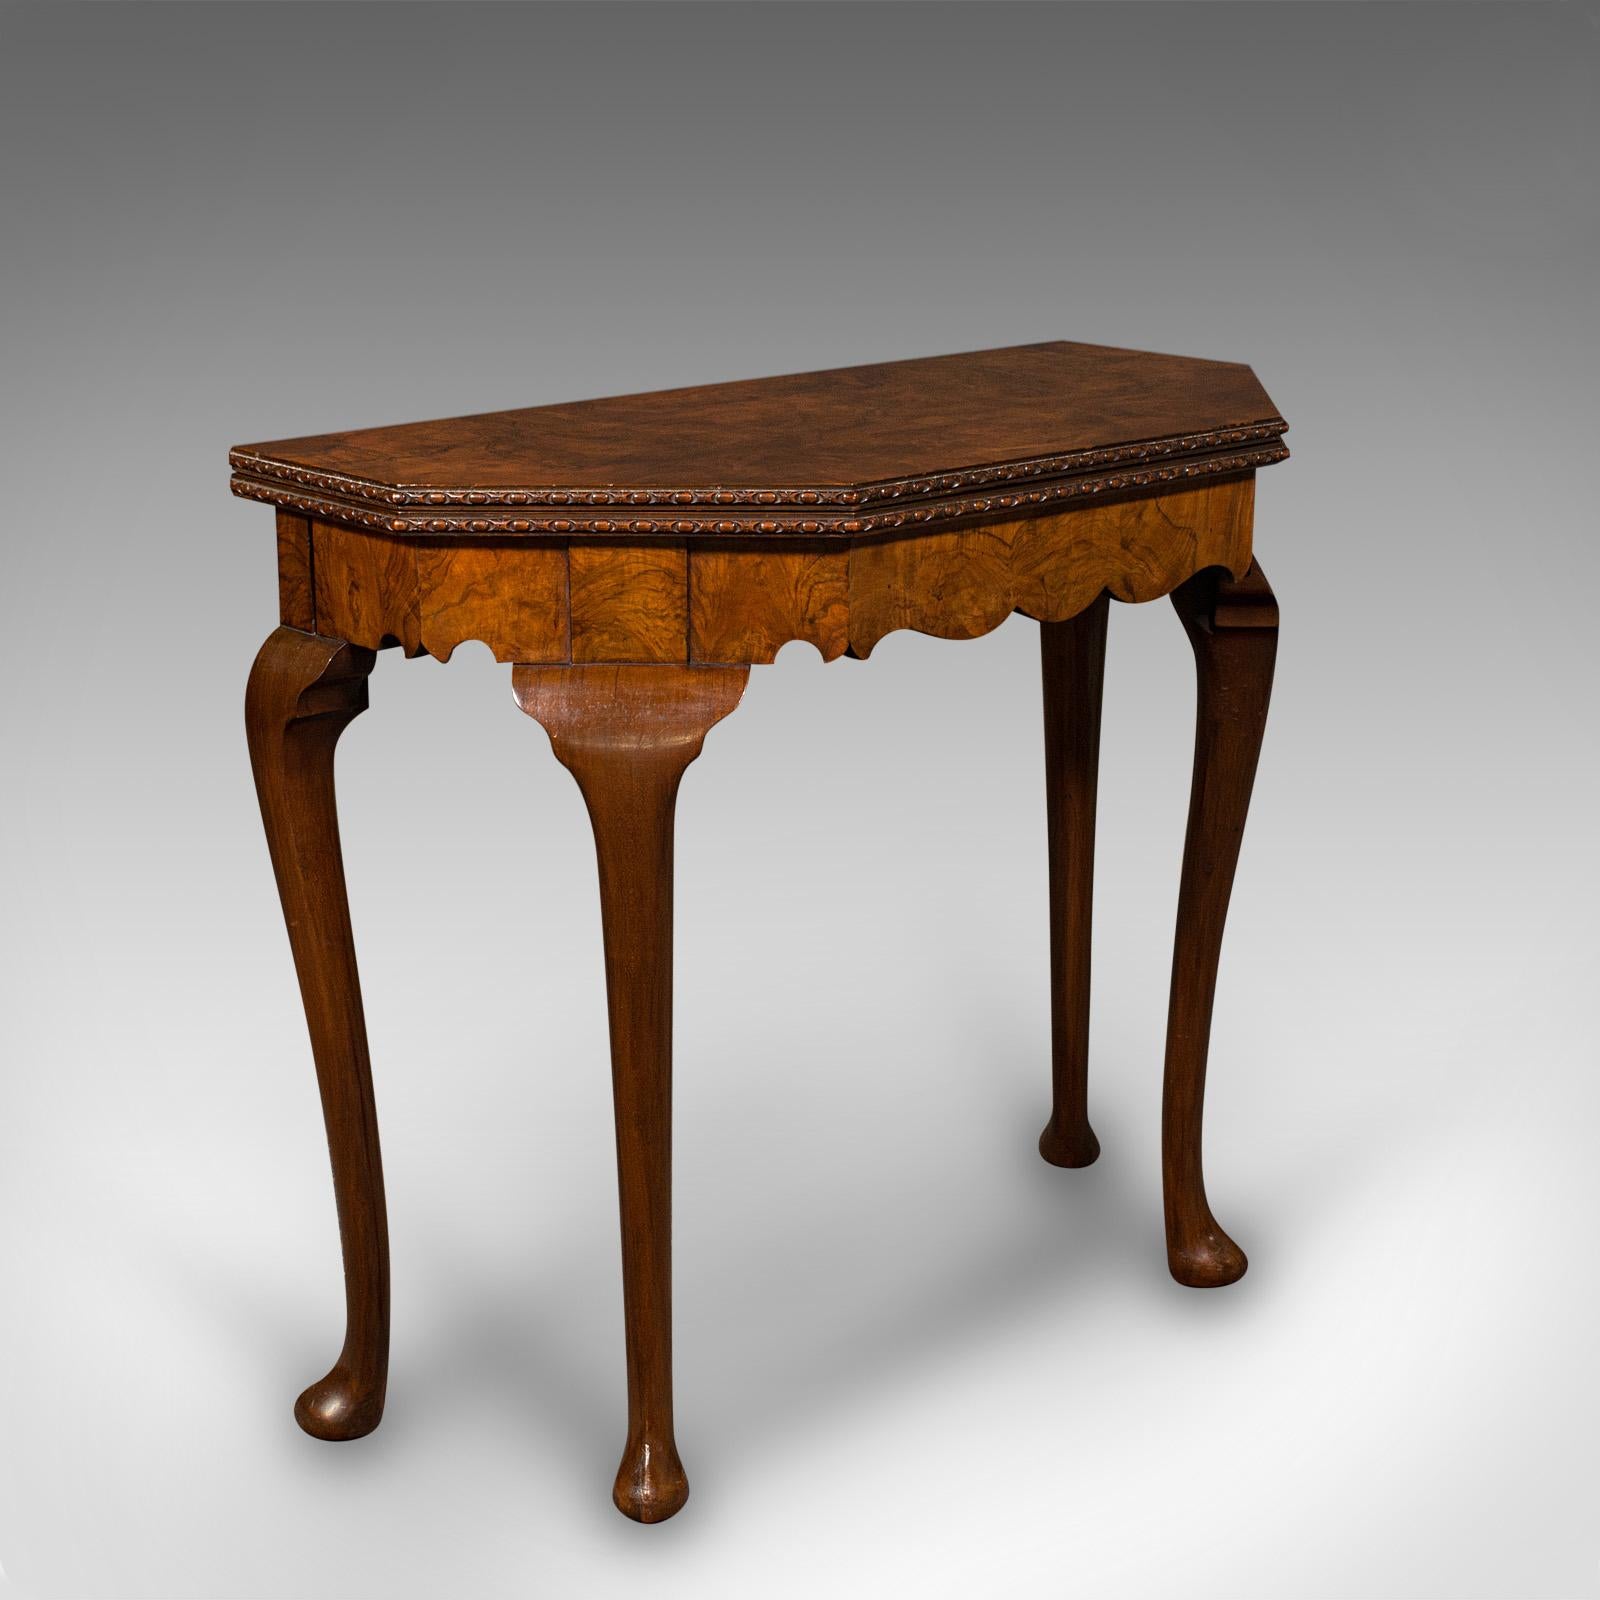 Dies ist ein antiker Klappkartentisch. Ein englischer Spieltisch aus Wurzelholz im georgianischen Revival-Stil aus der Edwardianischen Zeit um 1910.

Anmutiger Beistelltisch, der sich ausklappen lässt und eine schöne Spielfläche bietet
Zeigt eine